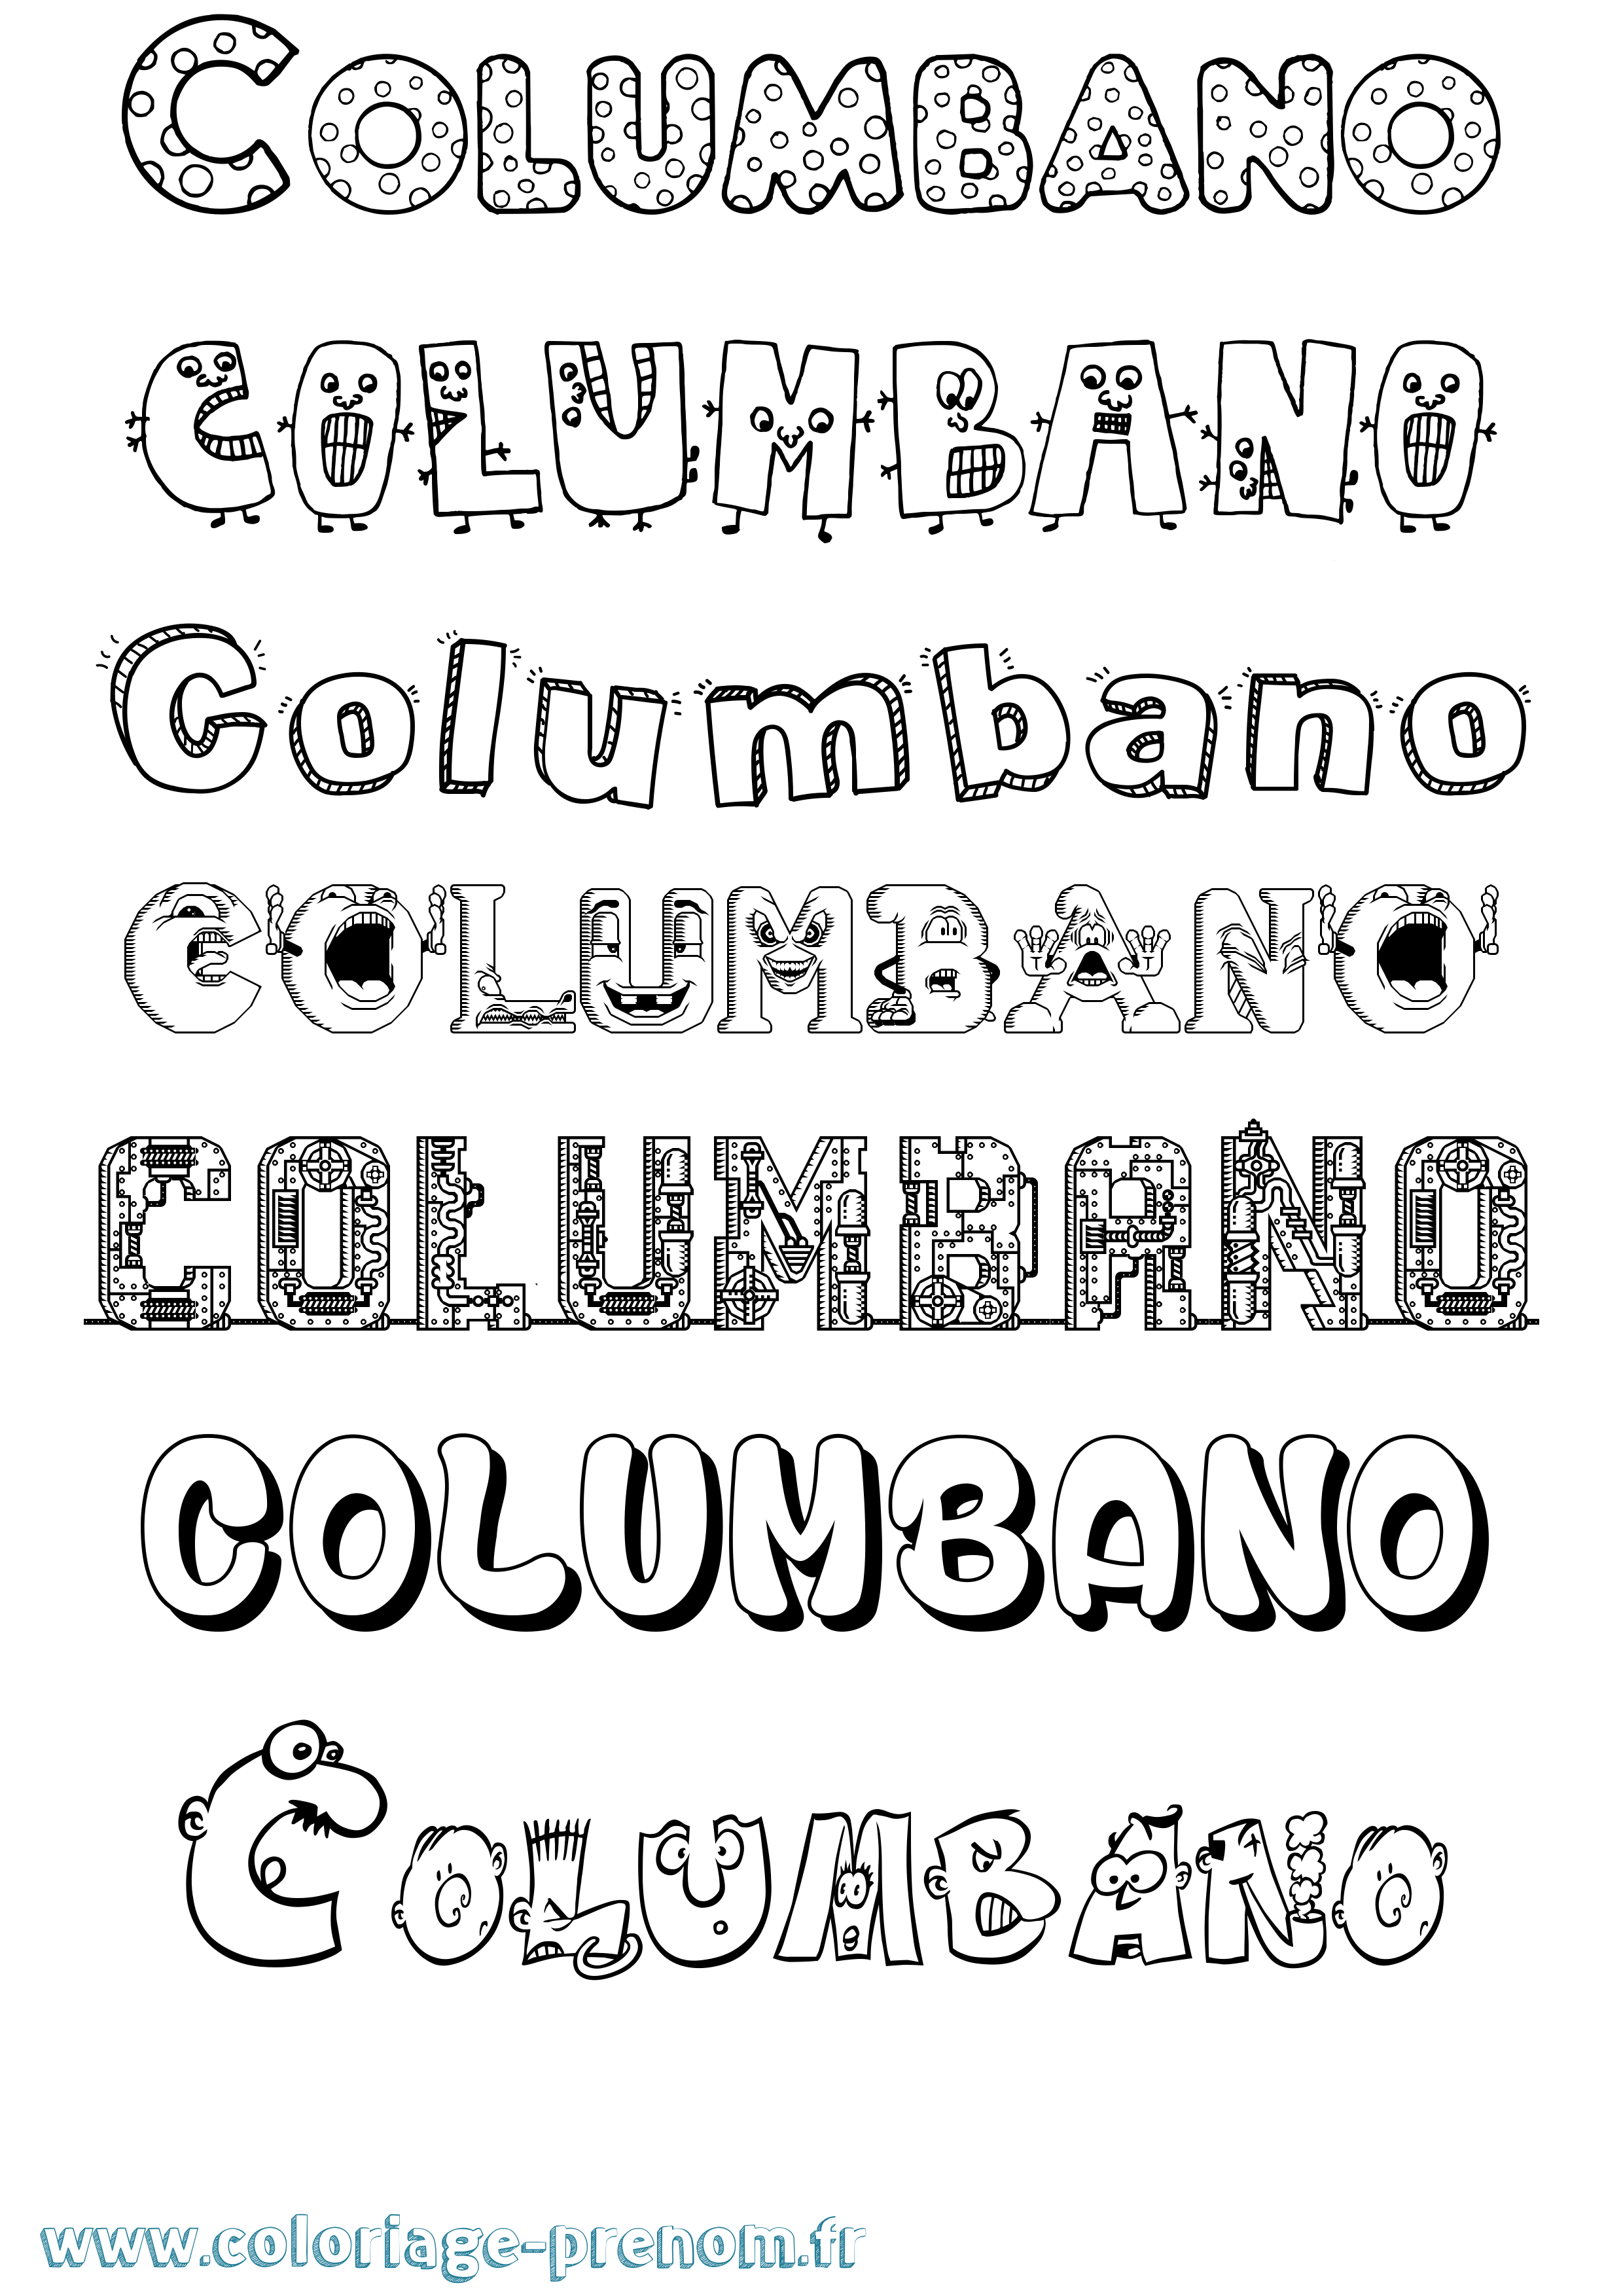 Coloriage prénom Columbano Fun